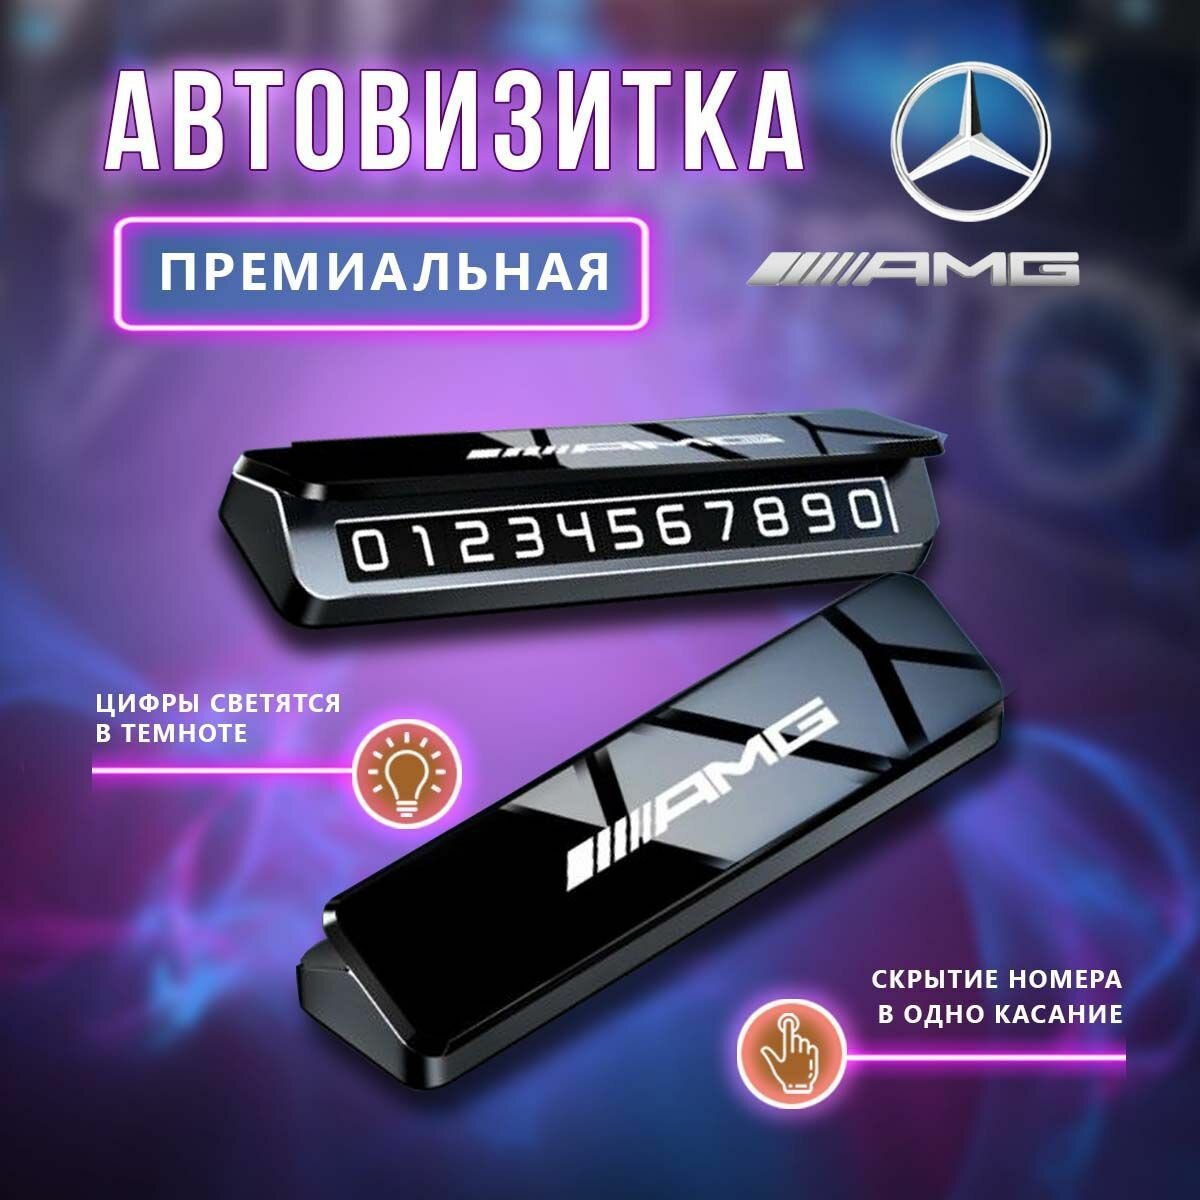 Премиальная парковочная визитка AMG Mercedes-Benz